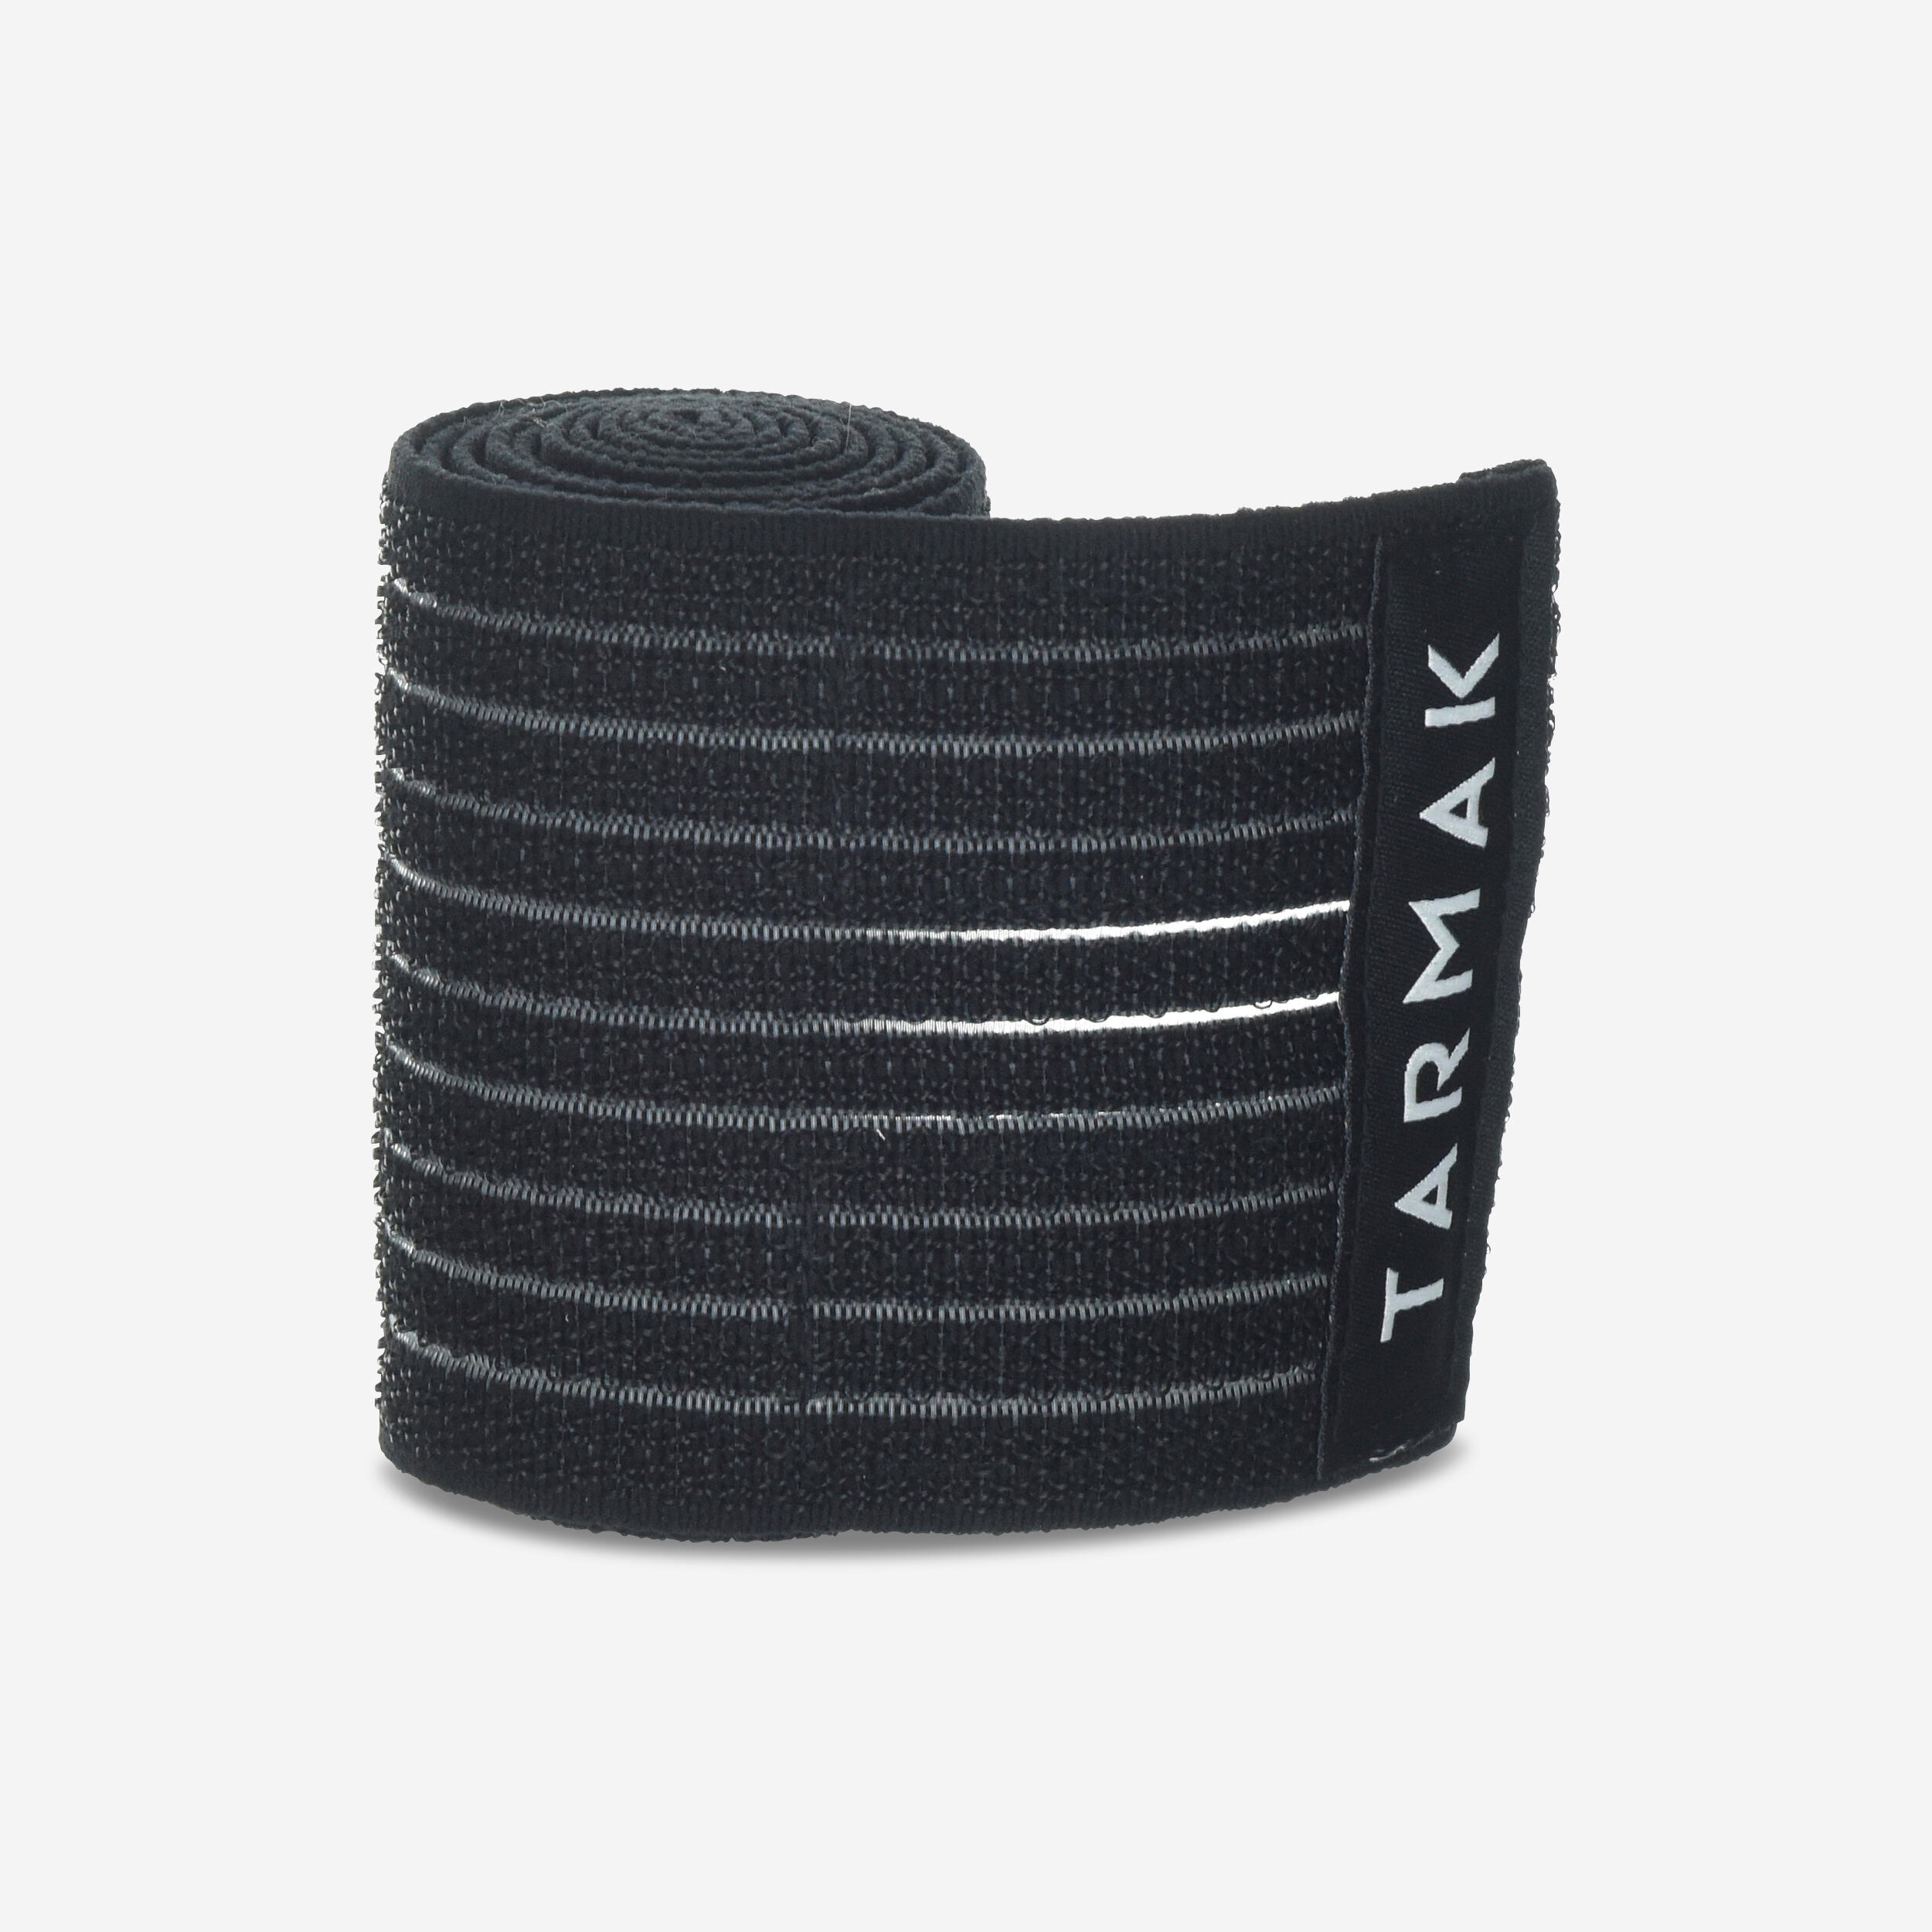 8 cm x 1.2 m Reusable Support Strap - Black 1/6